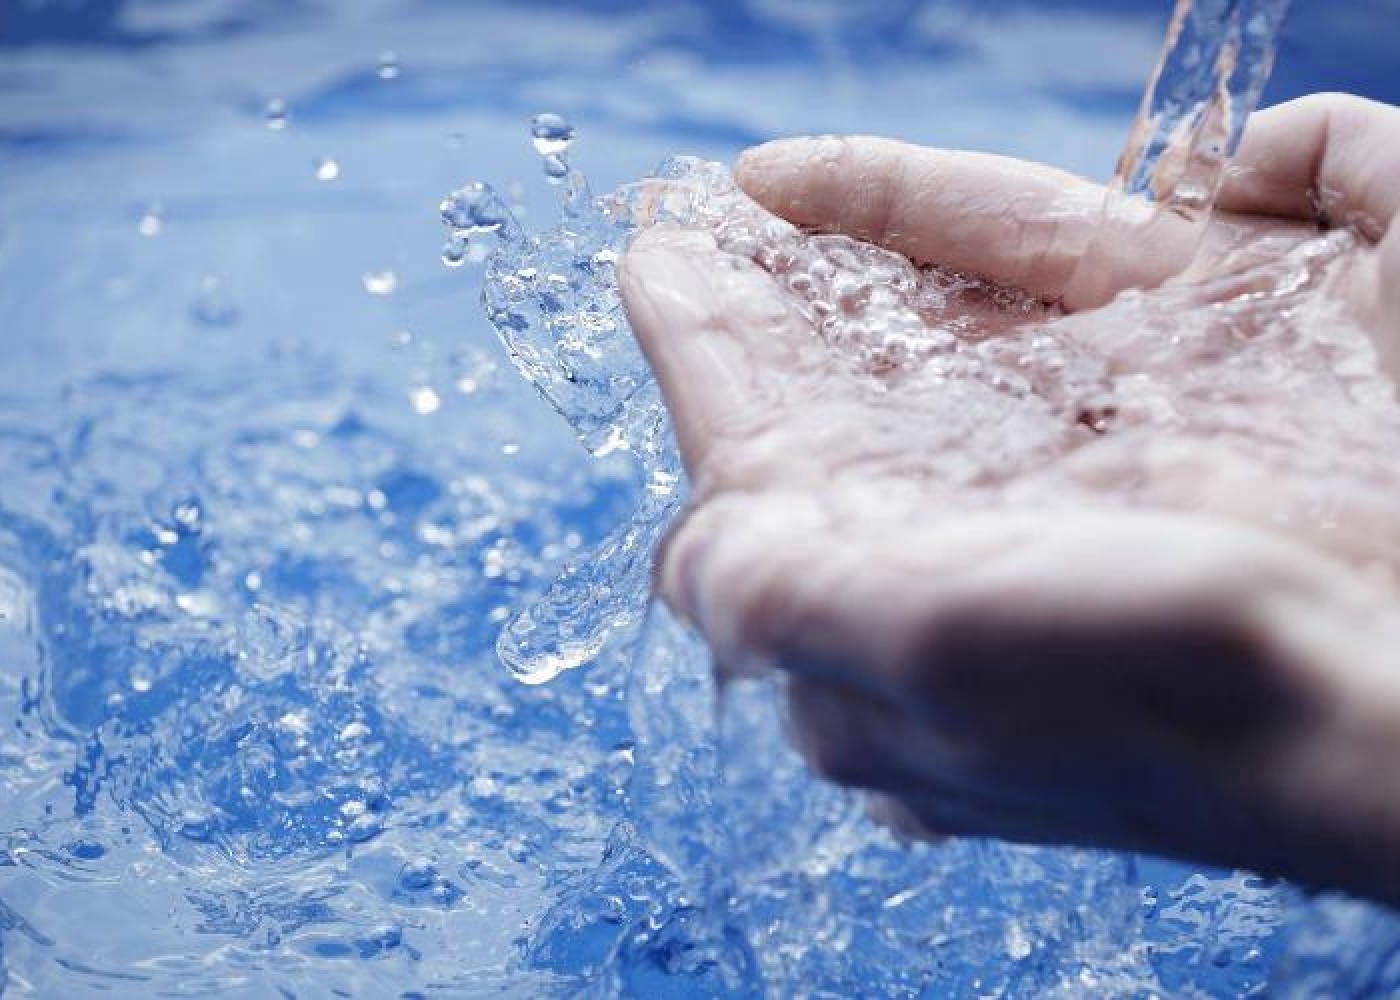 Ölkədə şirin su ehtiyatlarında ciddi azalma var